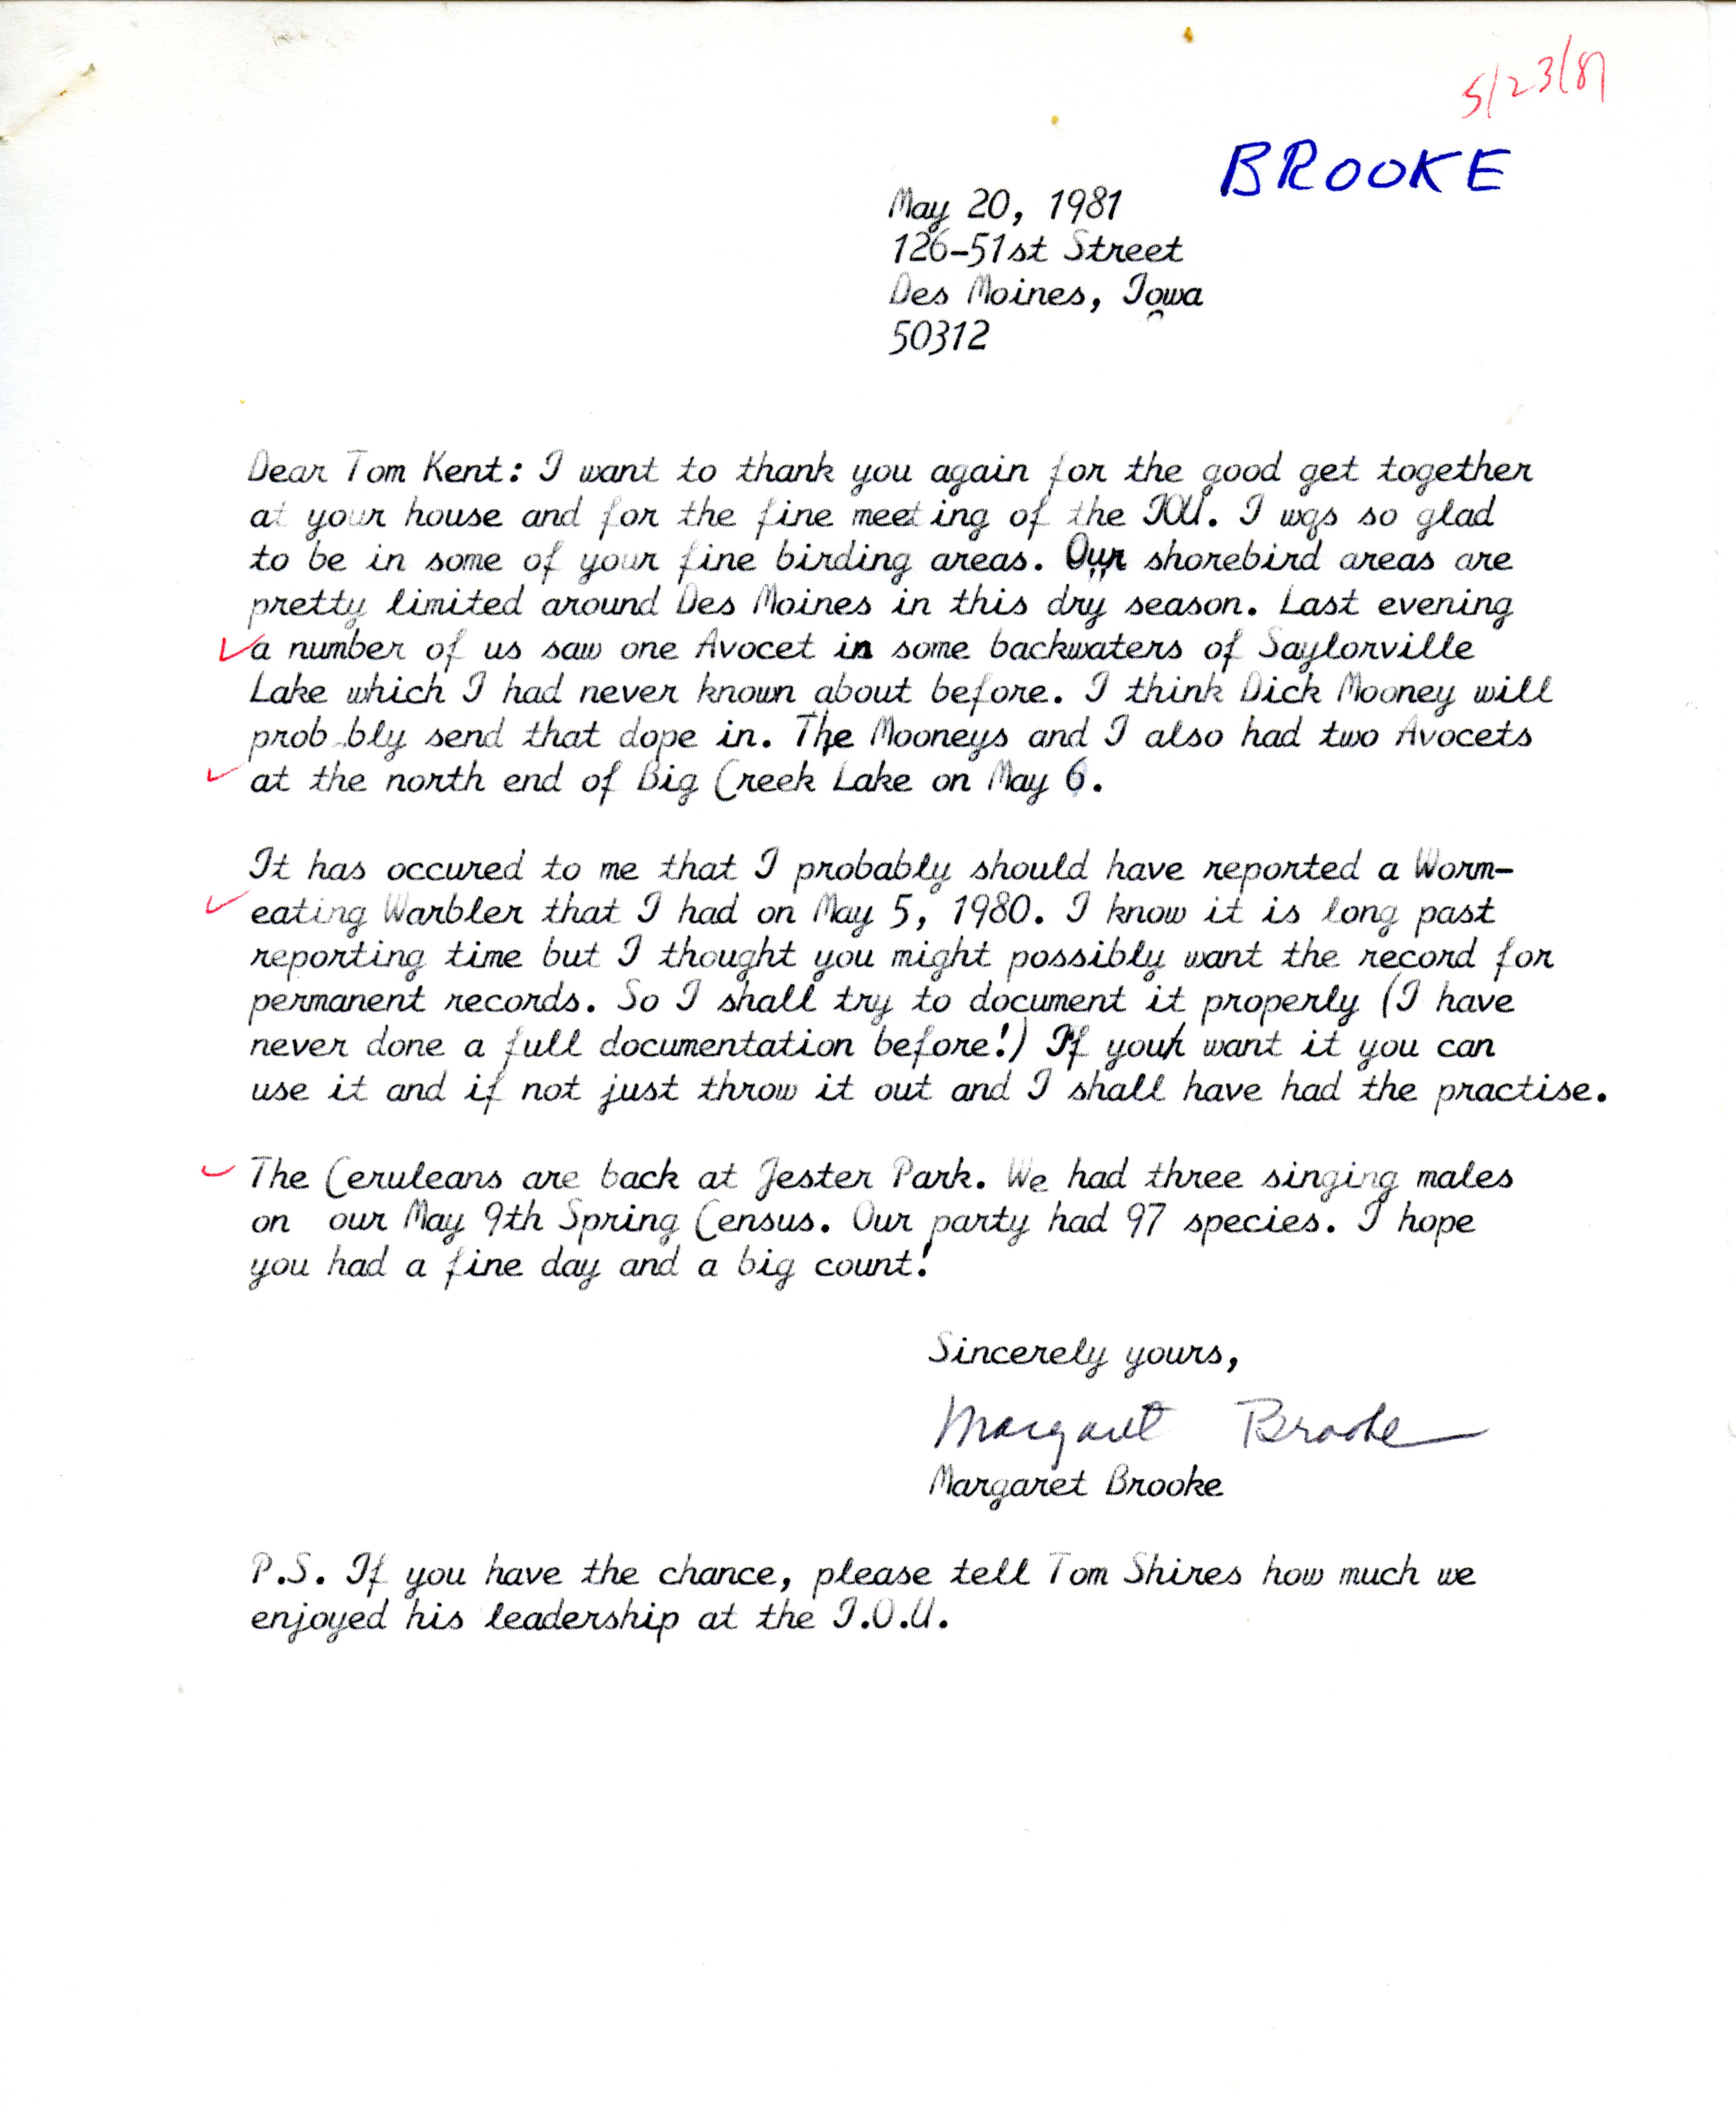 Margaret Brooke letter to Thomas Kent regarding a Worm-eating Warbler sighting, May 20, 1981